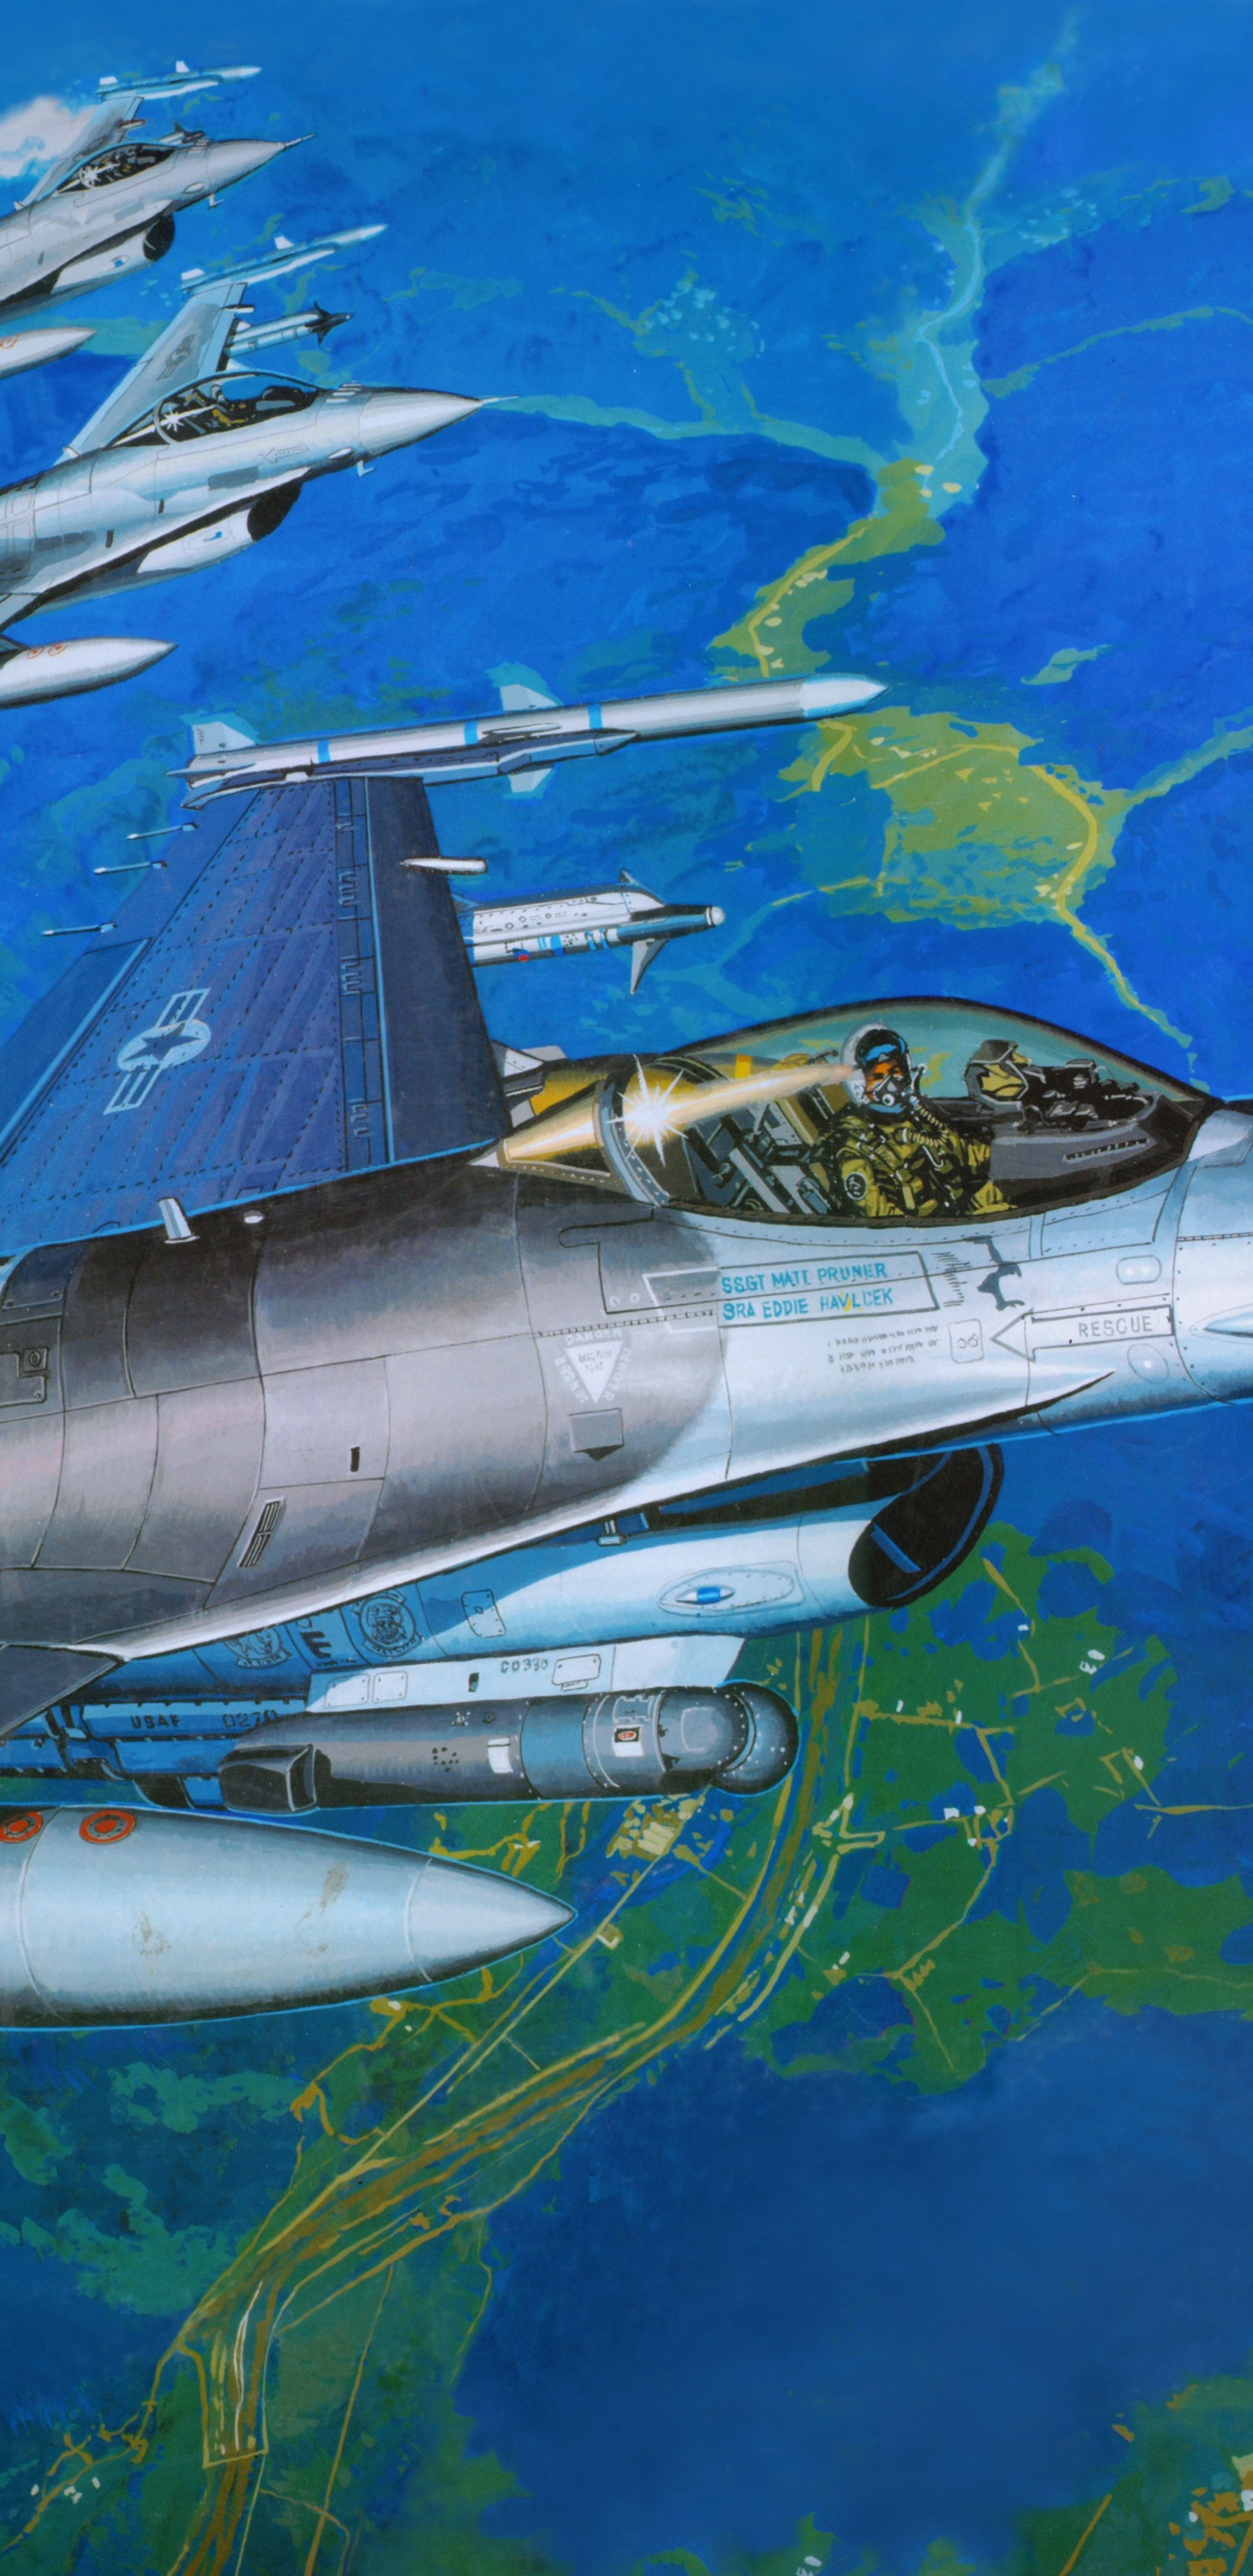 塑料模型, 航空, 空军, 军用飞机, 喷气式飞机 壁纸 1440x2960 允许